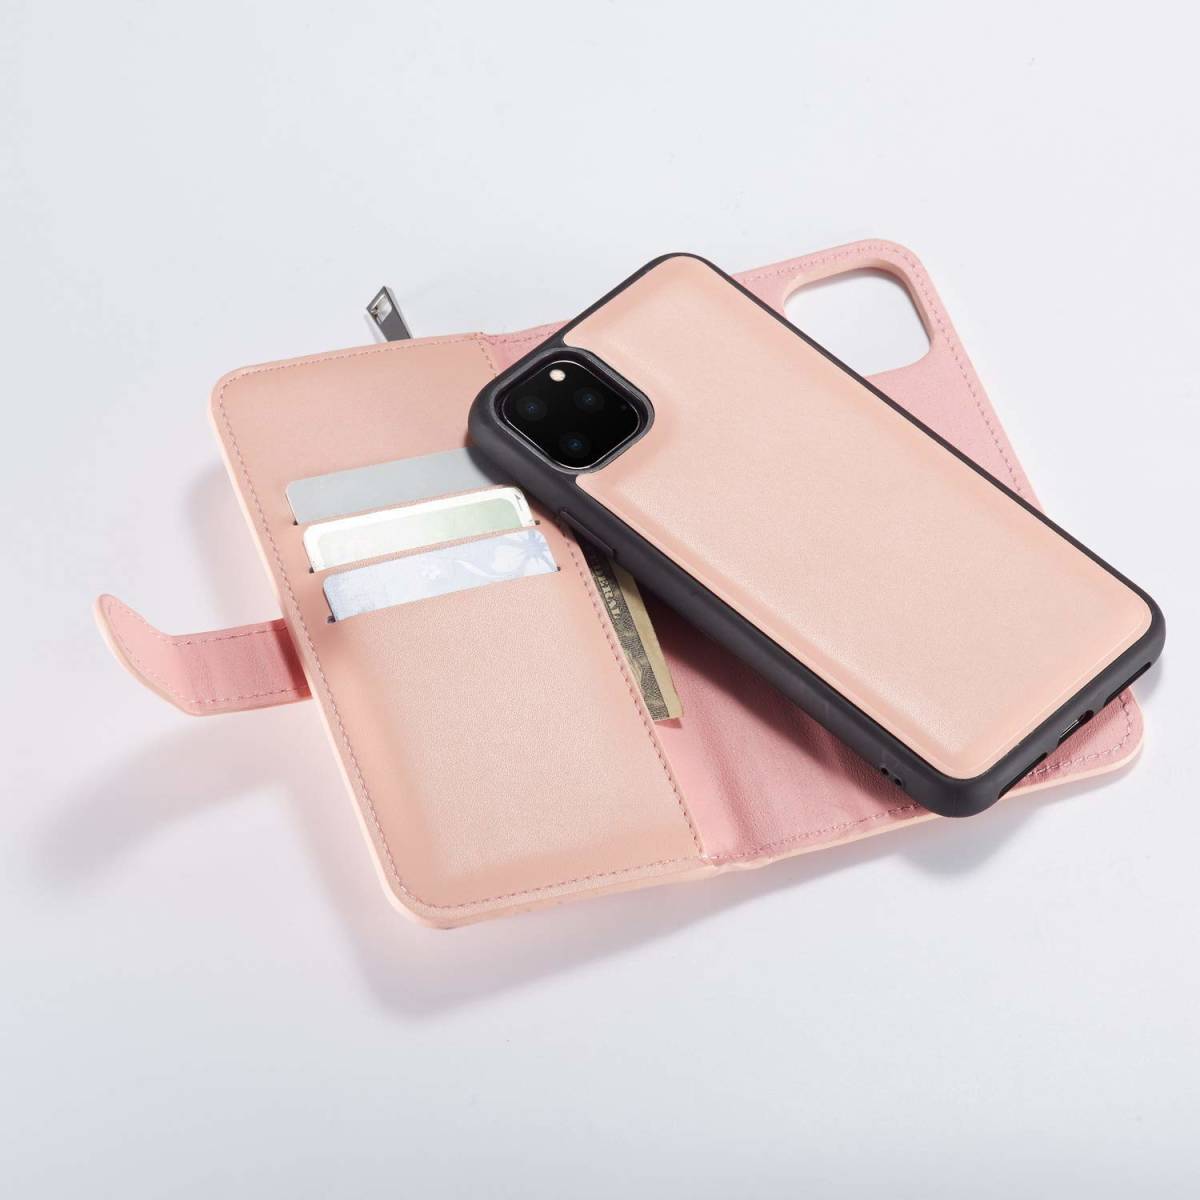 iPhone 11 Pro レザーケース アイフォン11 pro ケース 5.8インチ 手帳型 お財布付き カード収納 ピンク